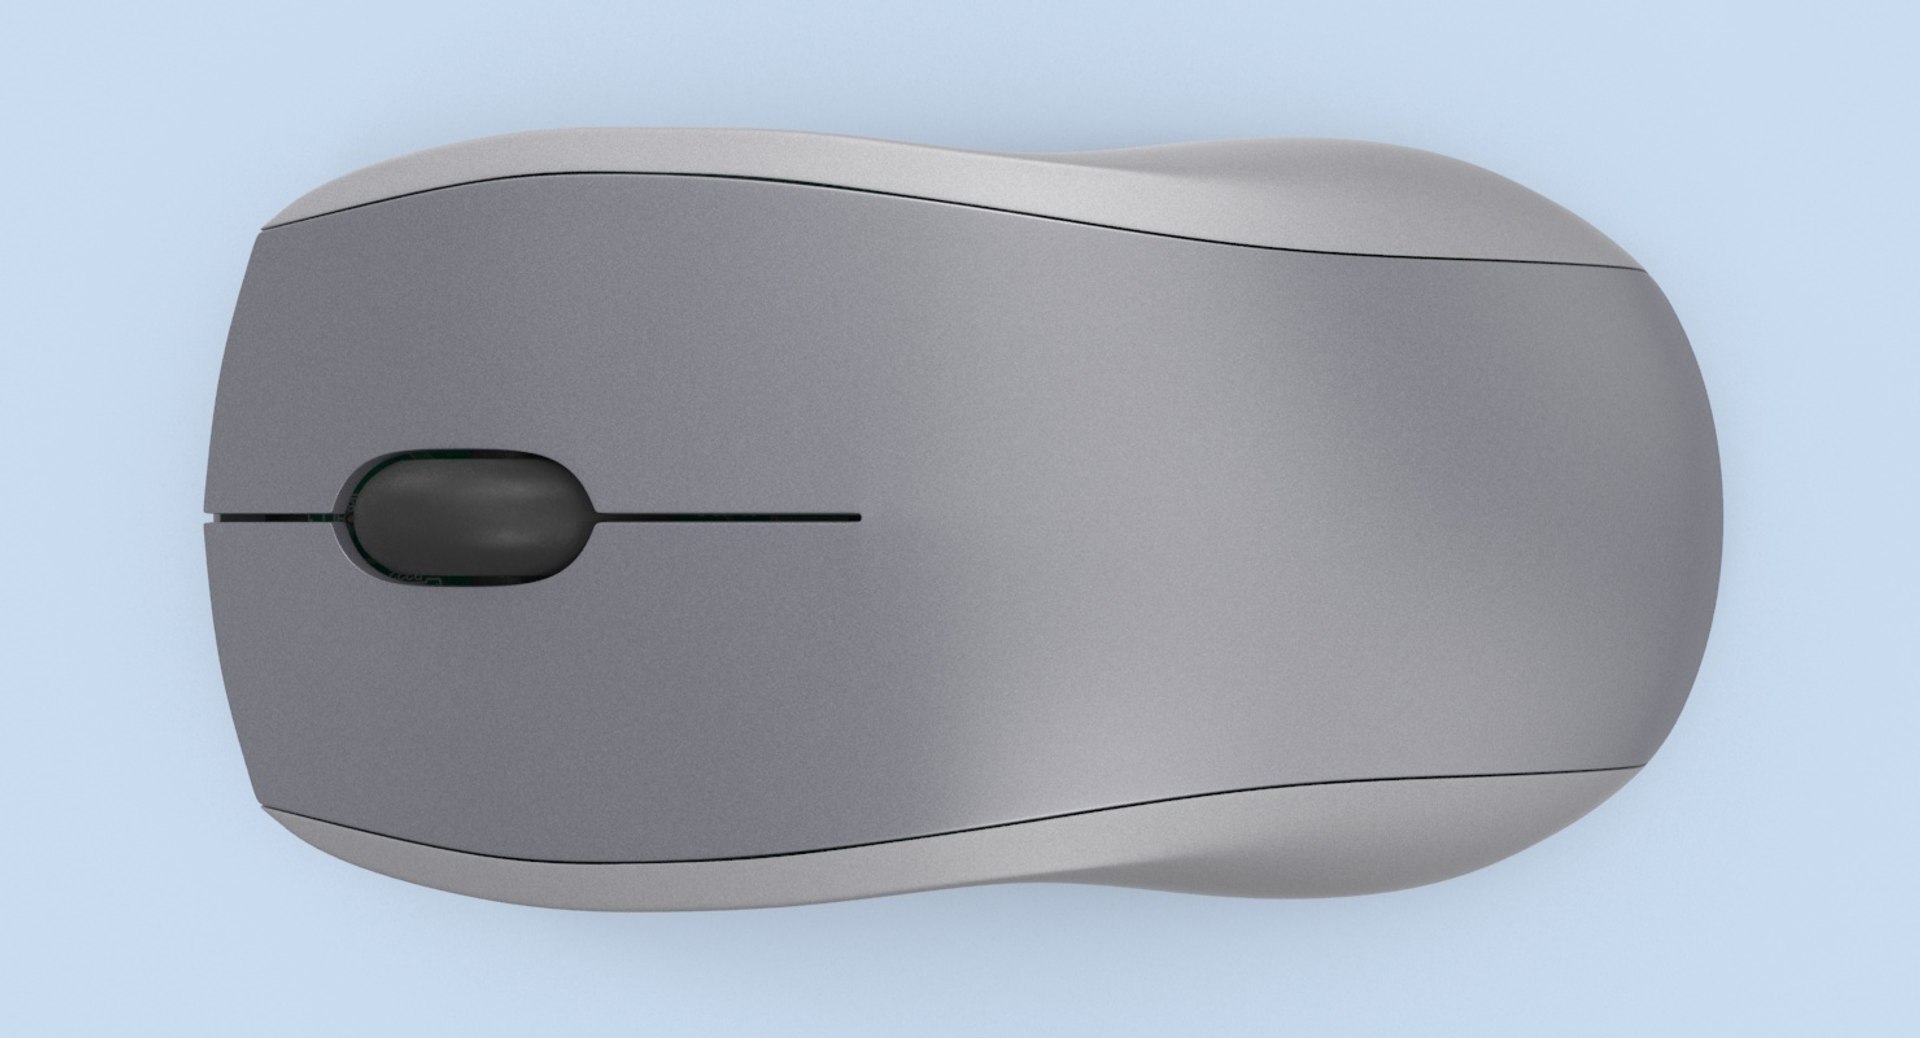 Black Computer Mouse 3d model Maya files free download - modeling 44743 on  CadNav